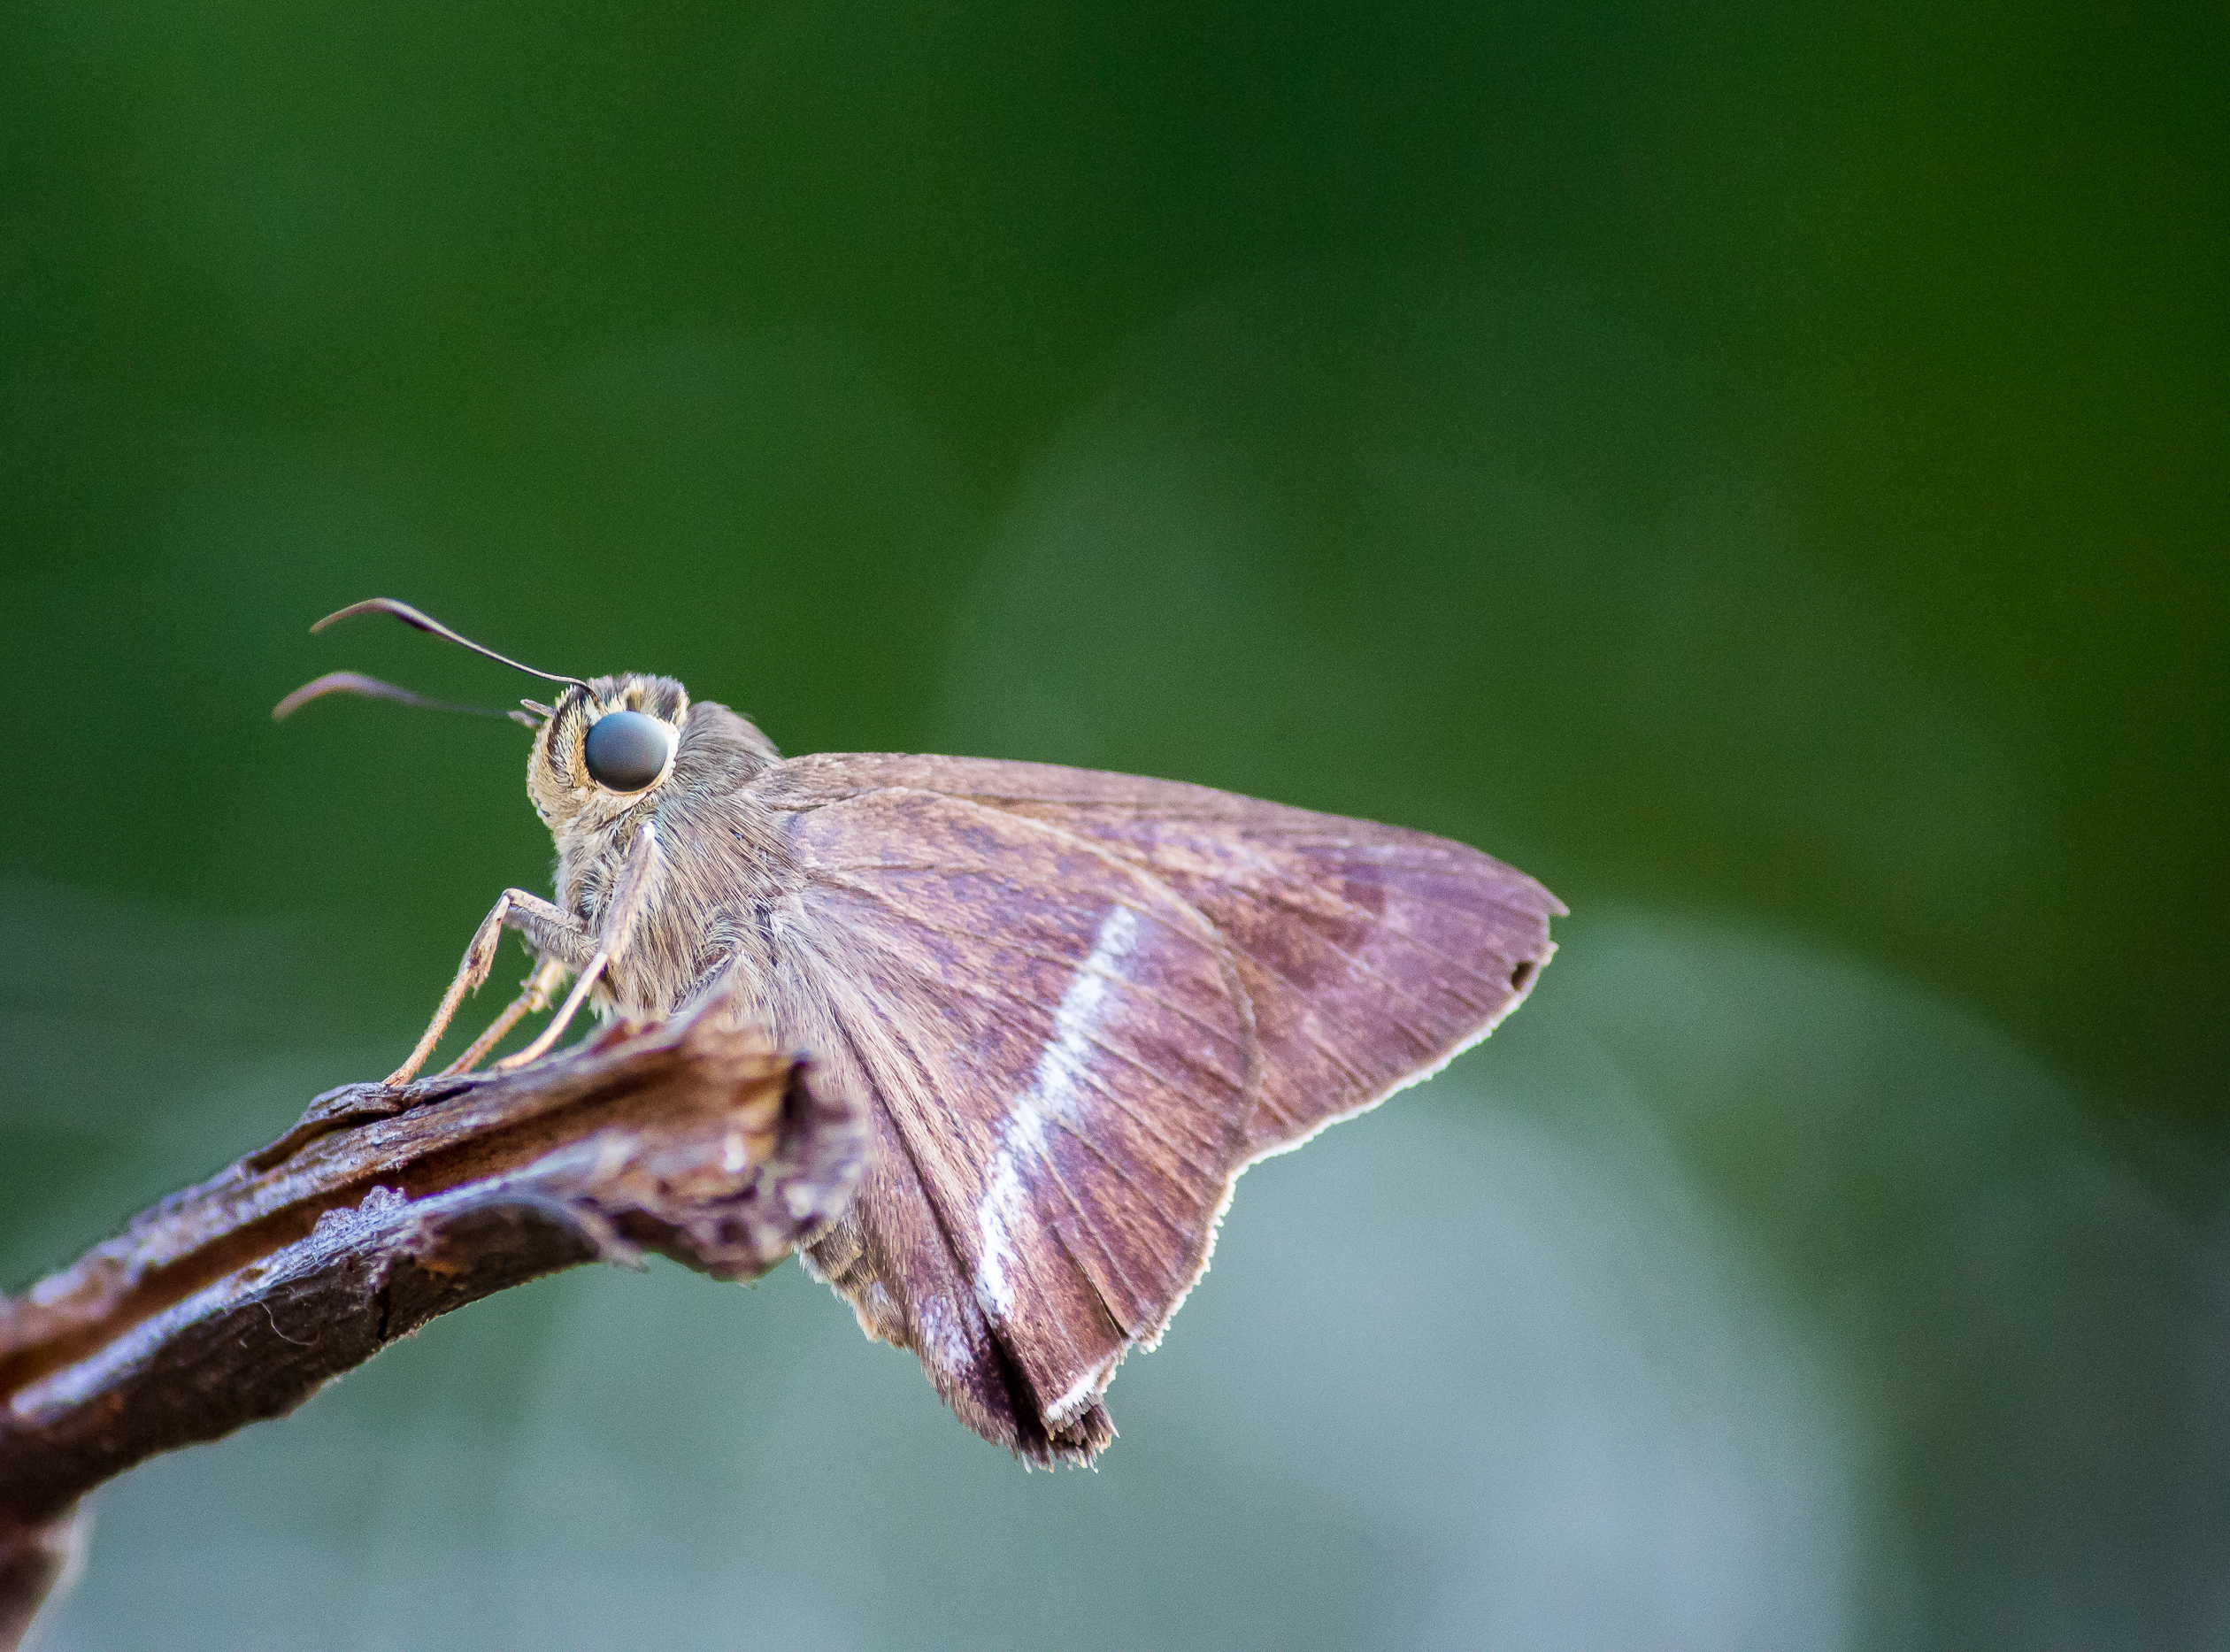 Moth Sitting on the Twig